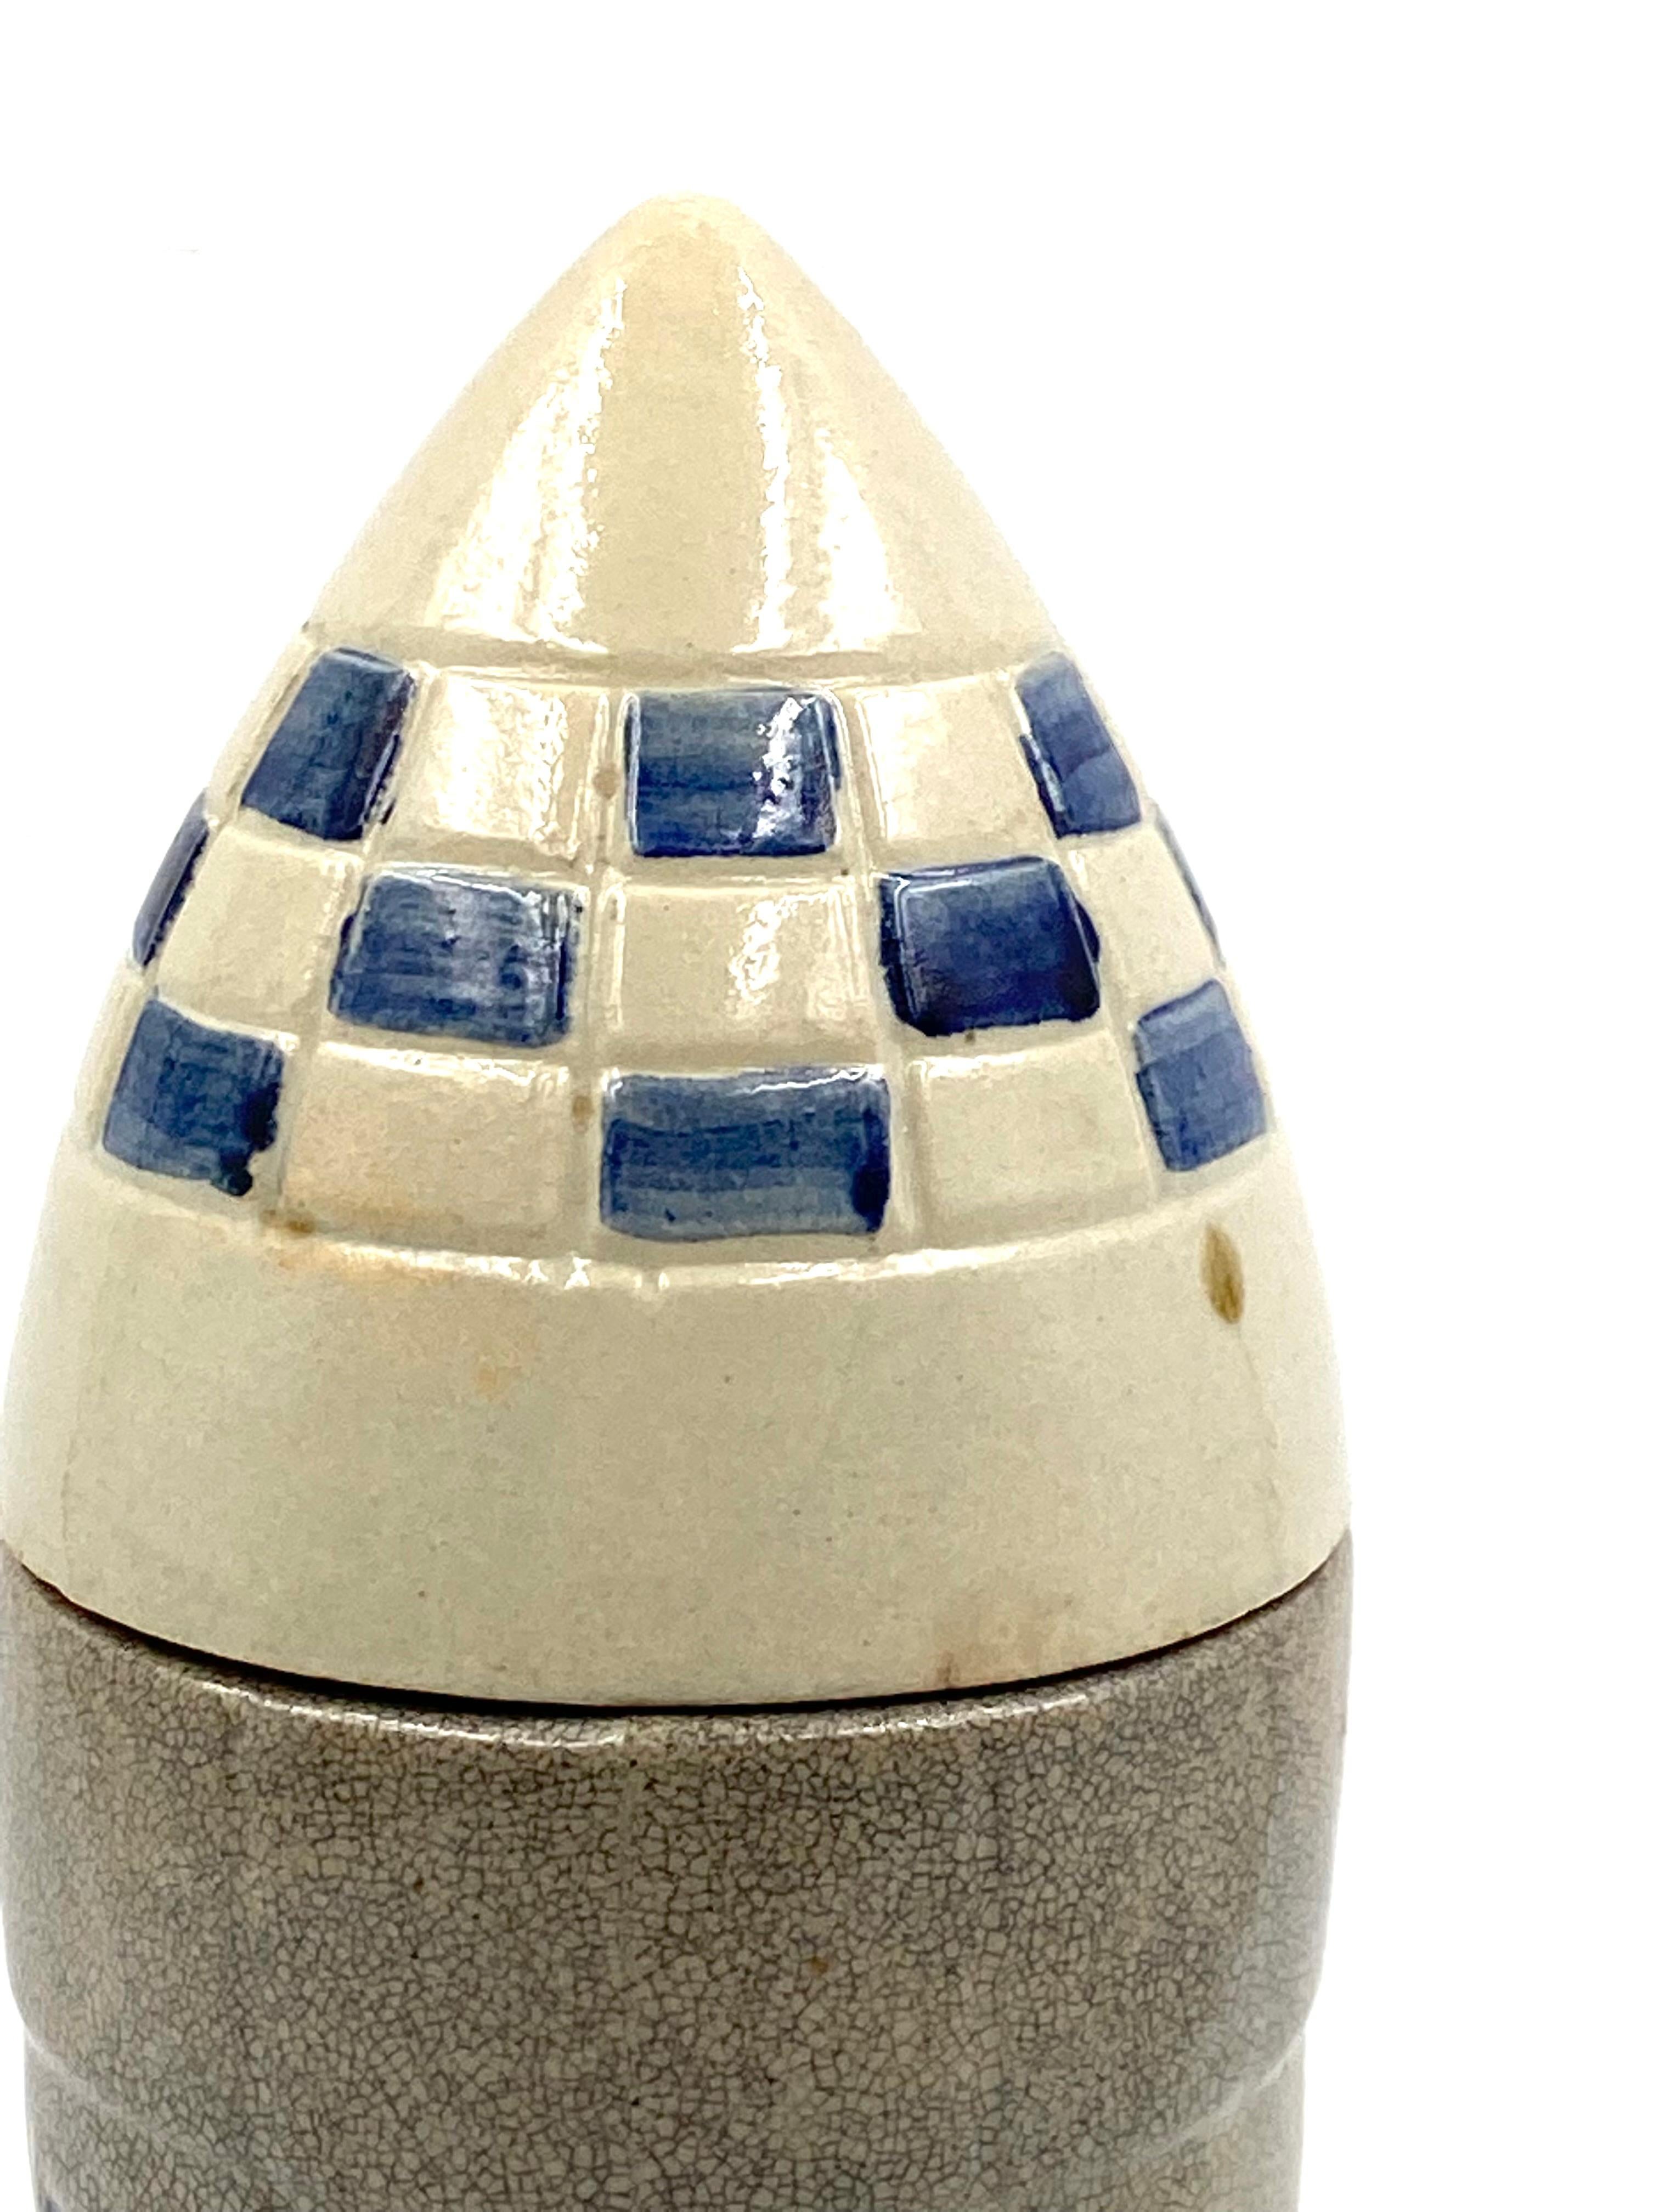 Ceramic Rocket / Spaceship Bottle / Decanter, France, 1940s-1950s For Sale 9